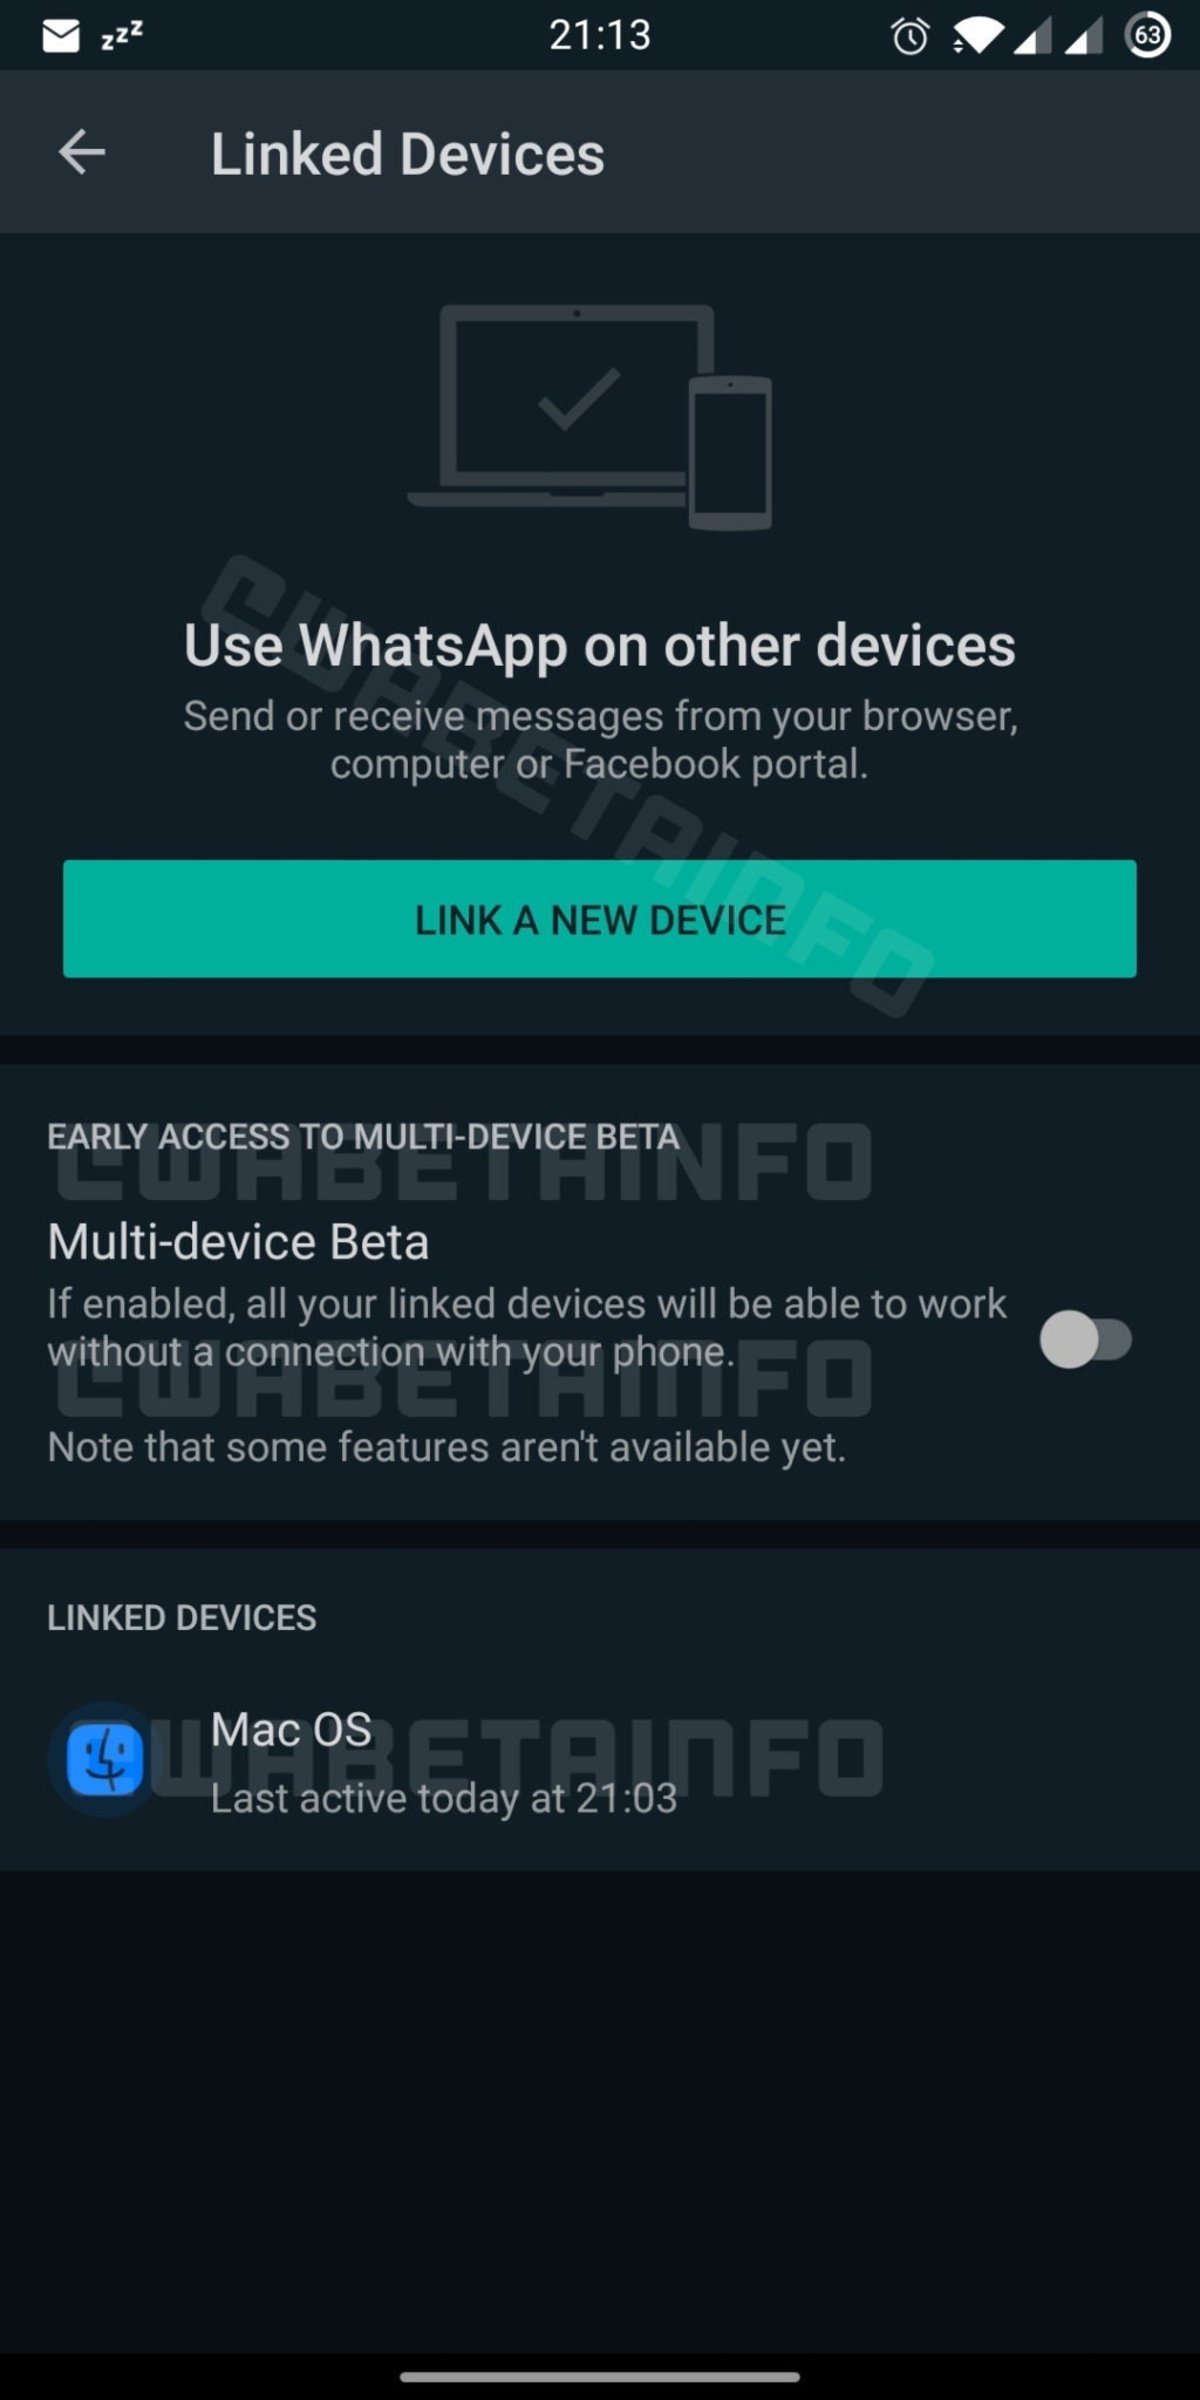 WhatsApp característica beta multidispositivo